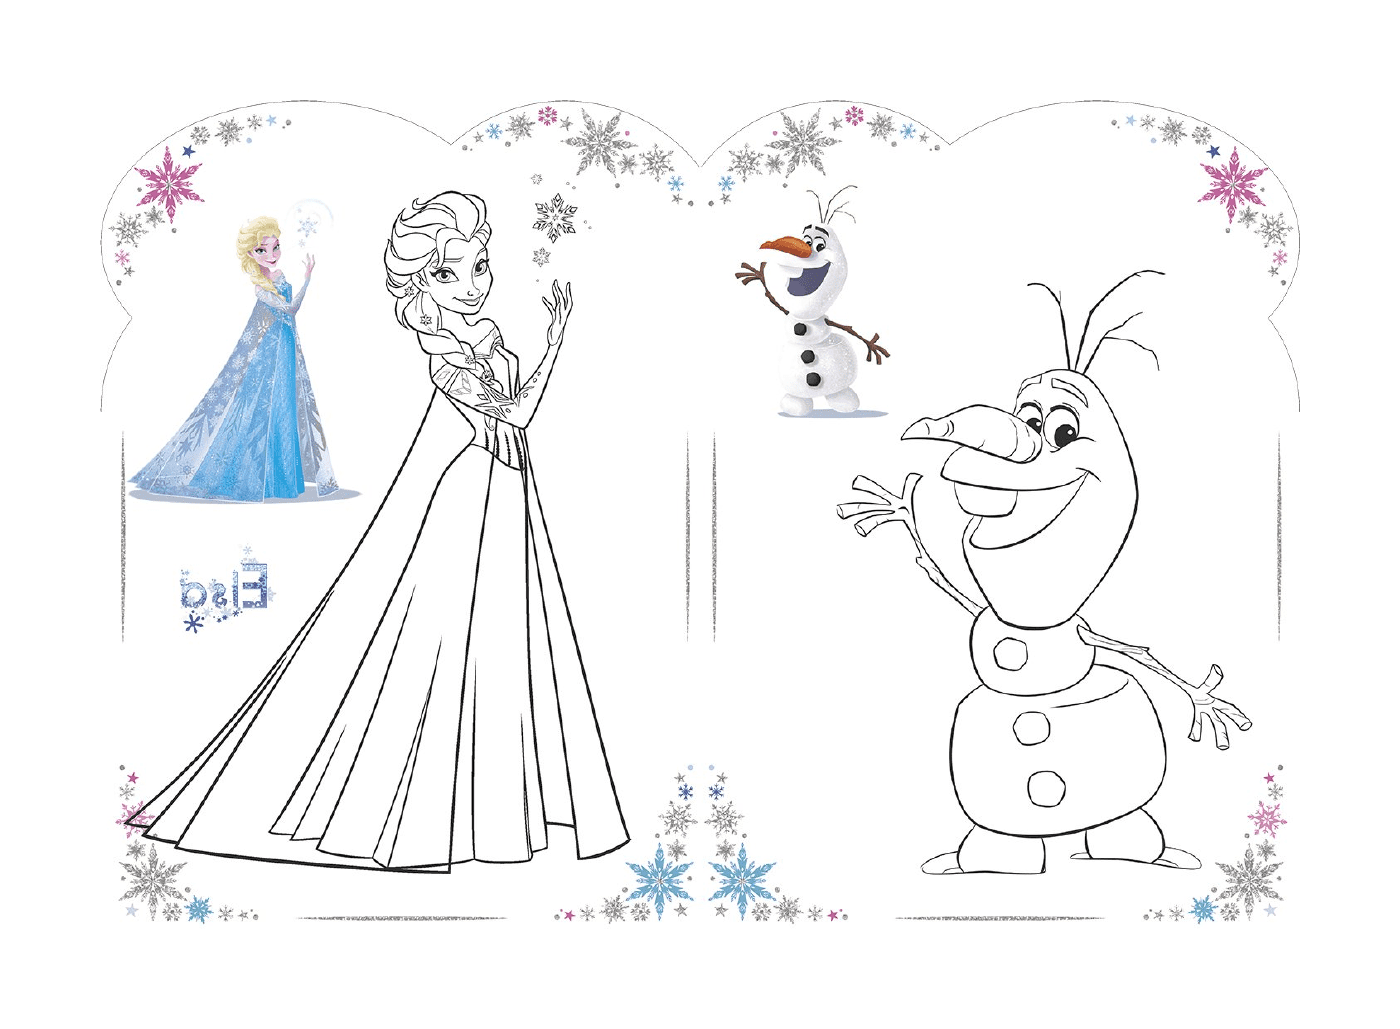   Olaf et Elsa de La Reine des Neiges de Disney en 2018 